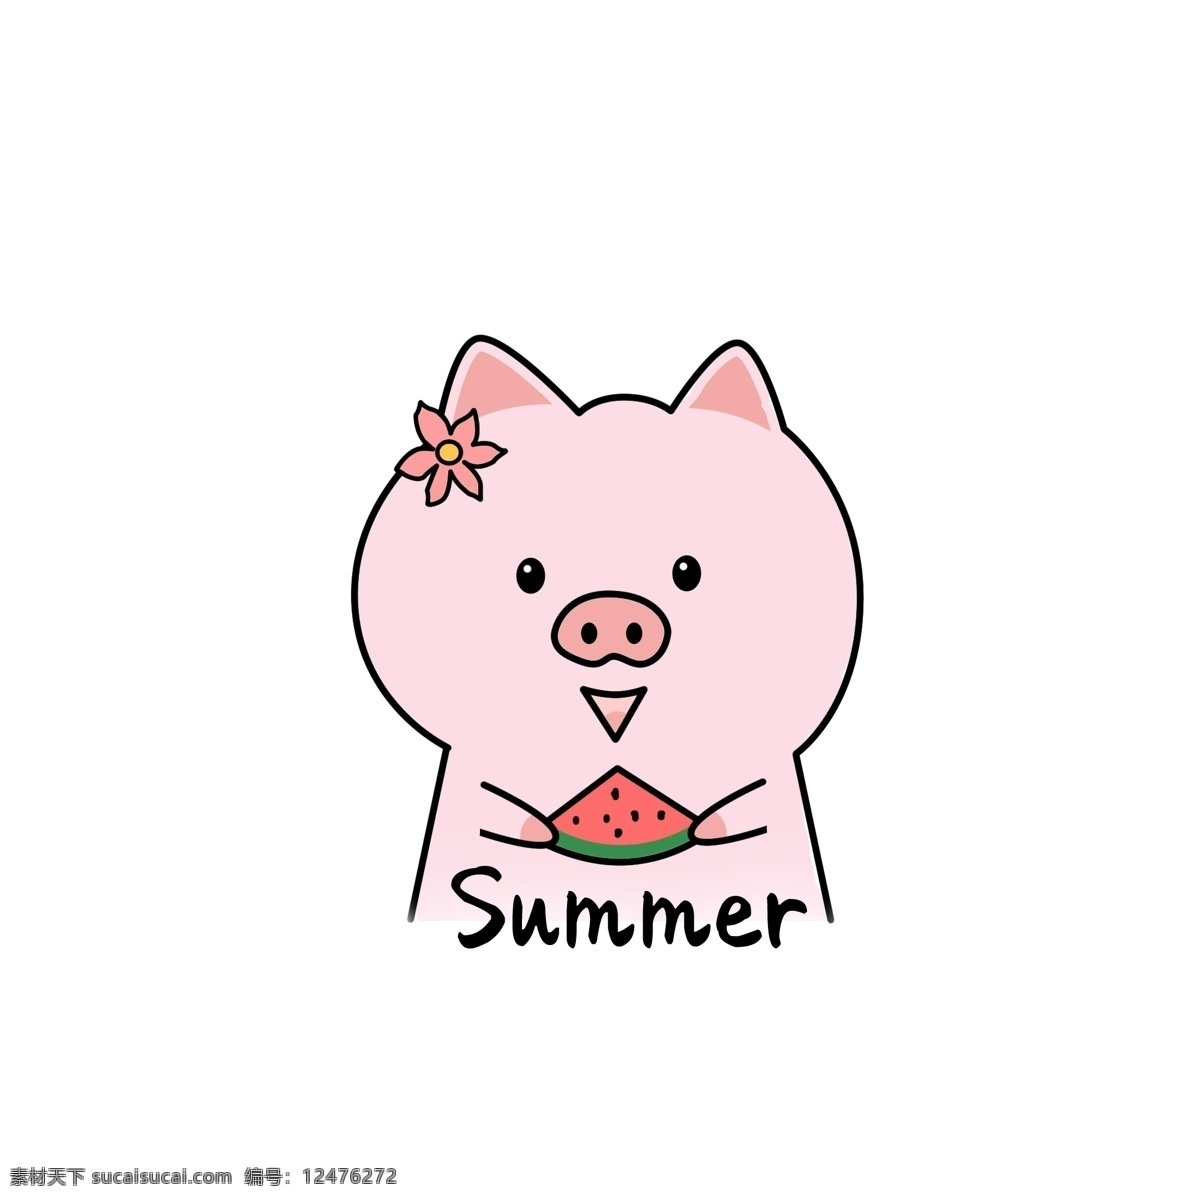 手绘 卡通 可爱 吃 西瓜 小 猪 卡通可爱 吃西瓜的小猪 简笔画 小清新 夏天